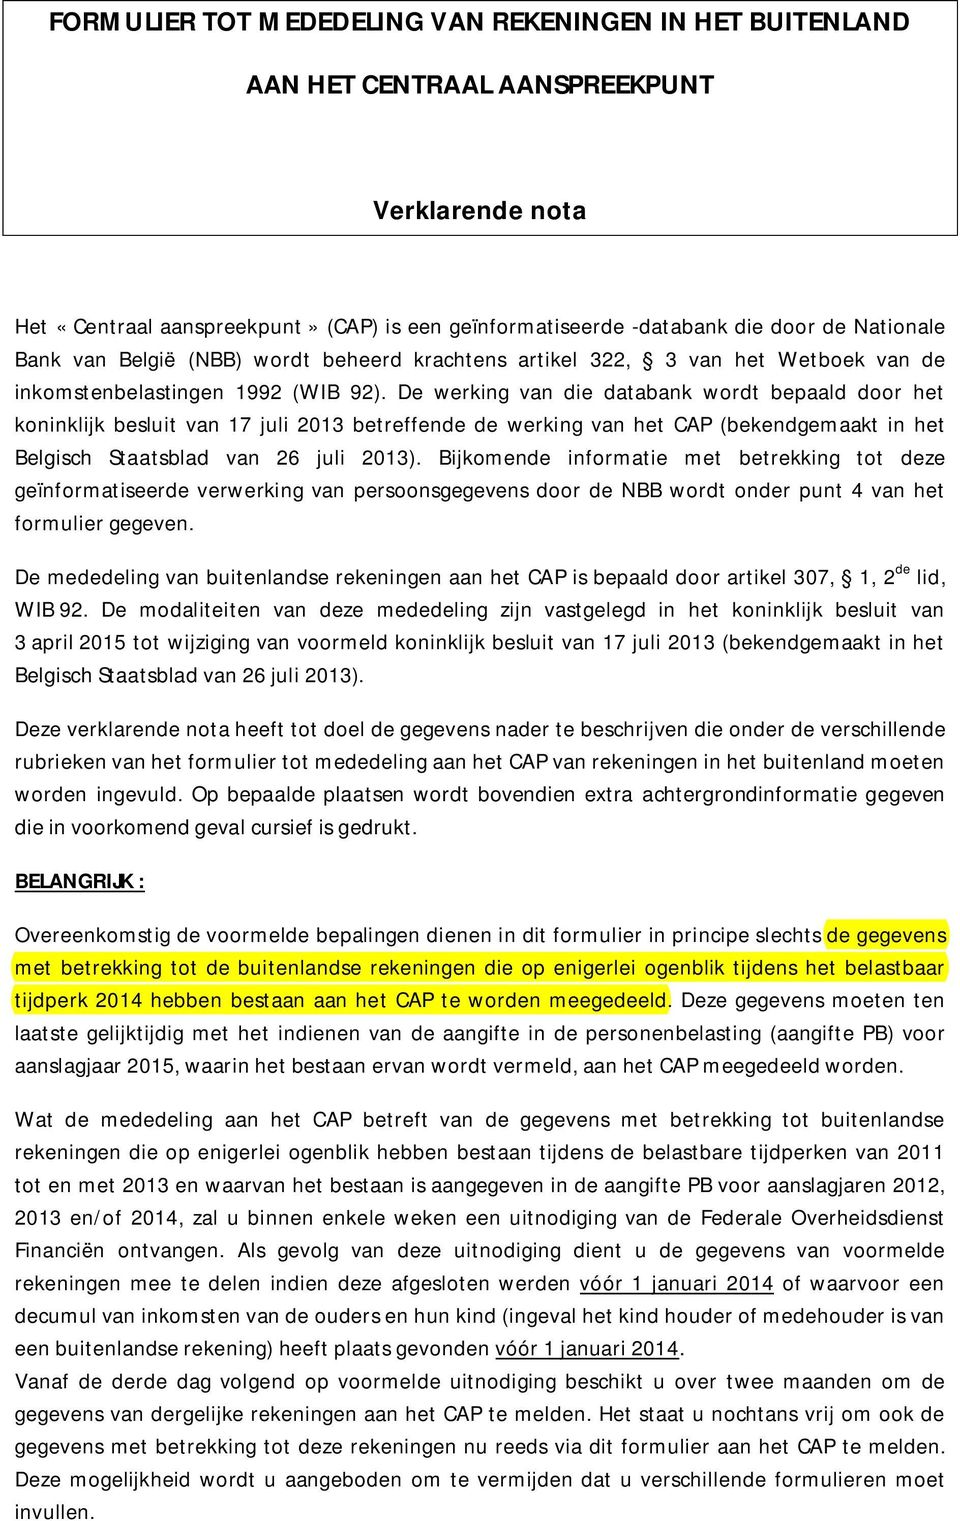 De werking van die databank wordt bepaald door het koninklijk besluit van 17 juli 2013 betreffende de werking van het CAP (bekendgemaakt in het Belgisch Staatsblad van 26 juli 2013).